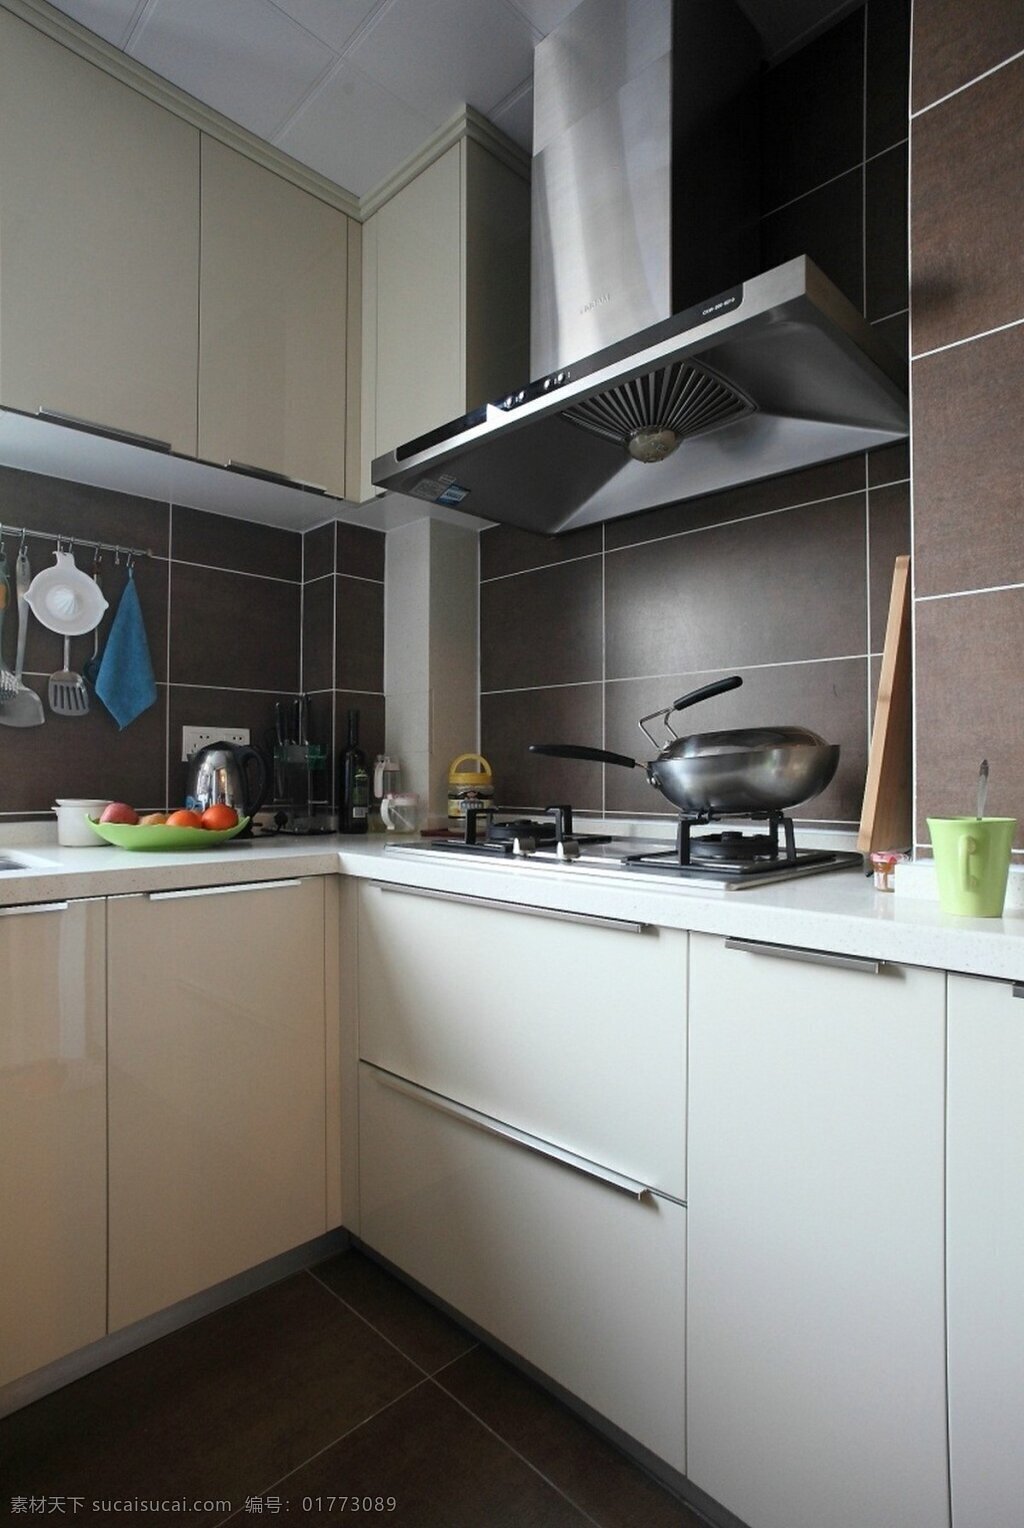 简约 风 室内设计 厨房 白色 柜子 灶台 效果图 现代 料理台 调 抽油烟机 家装